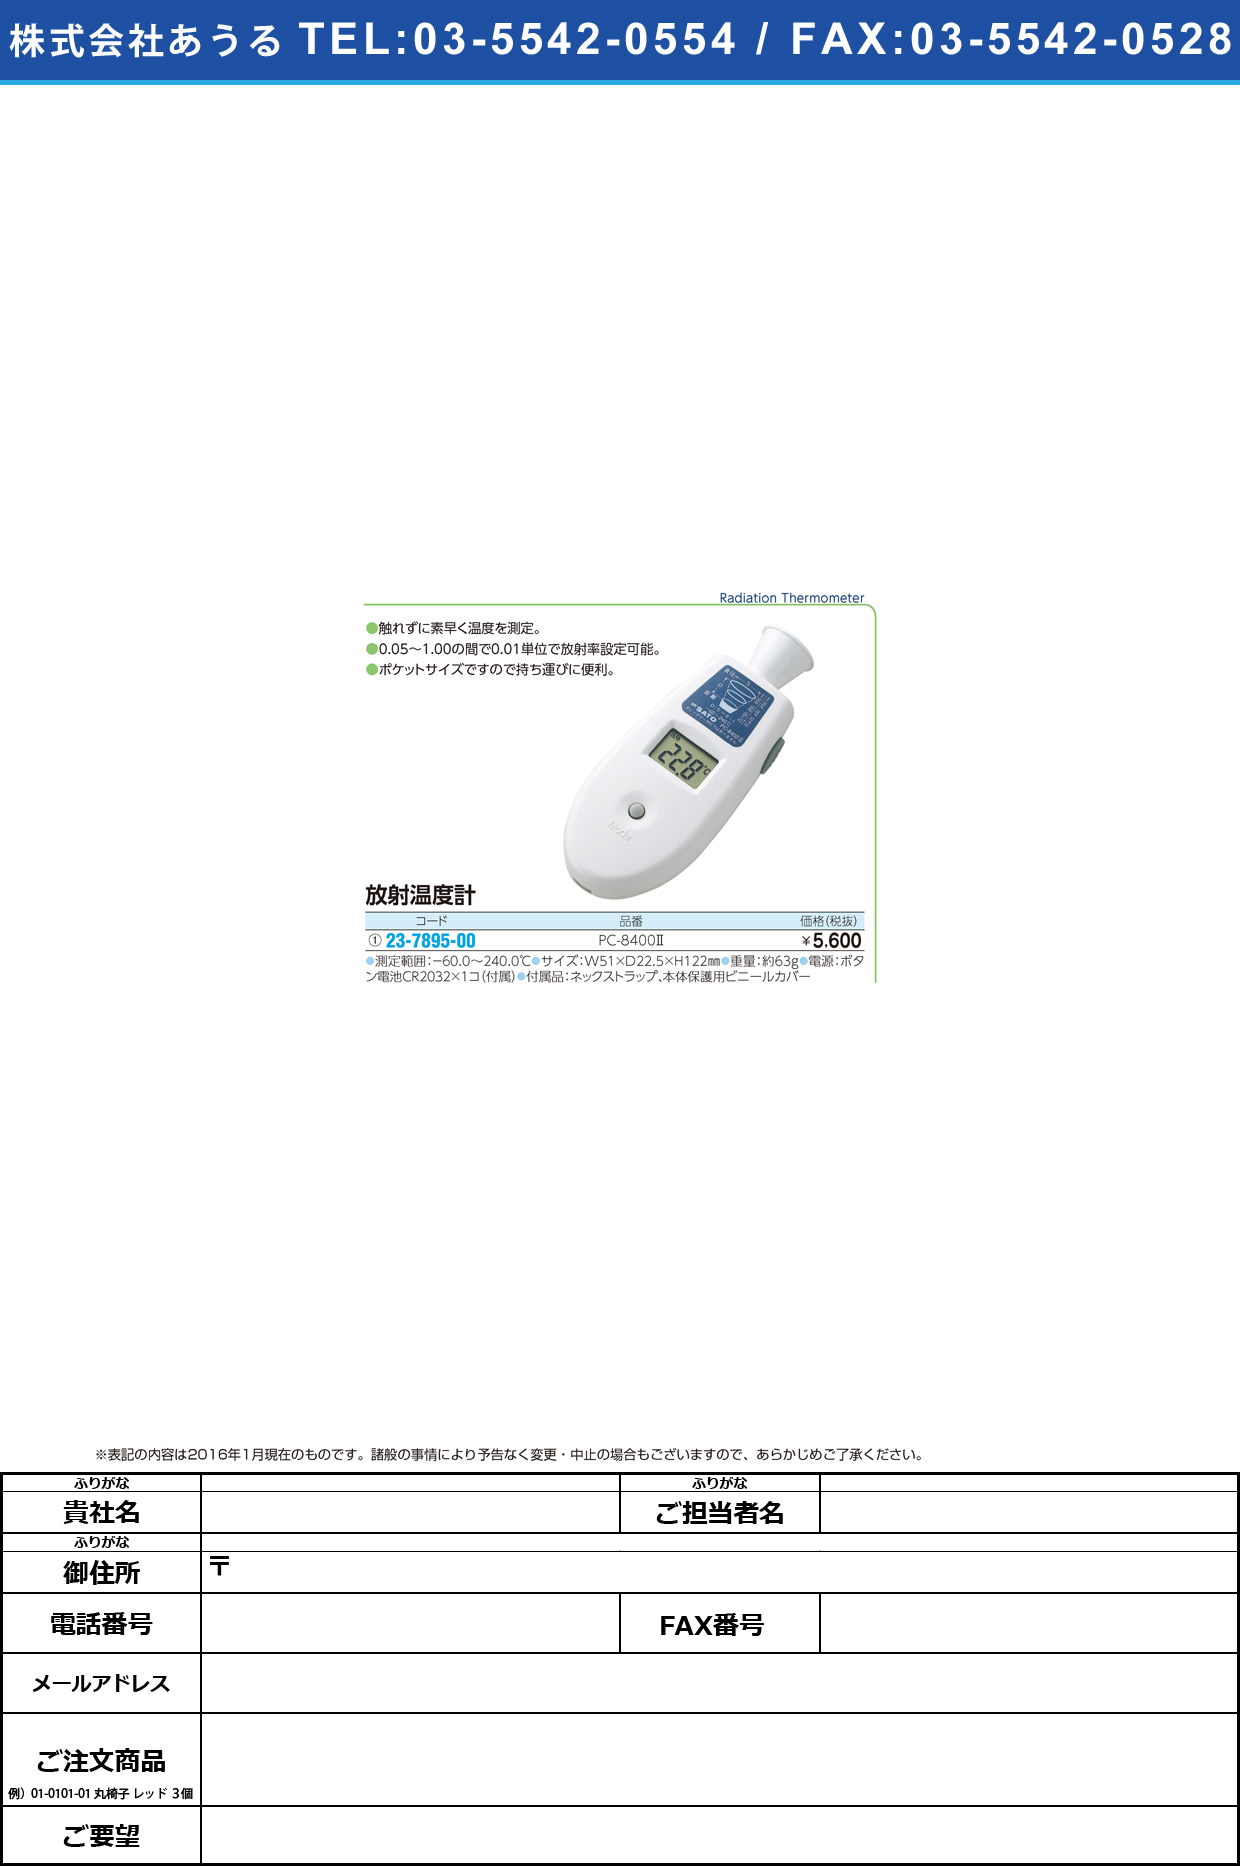 (23-7895-00)ポケット放射温度計 ﾎﾟｹｯﾄﾎｳｼｬｵﾝﾄﾞｹｲ PC-8400-2【1台単位】【2016年カタログ商品】